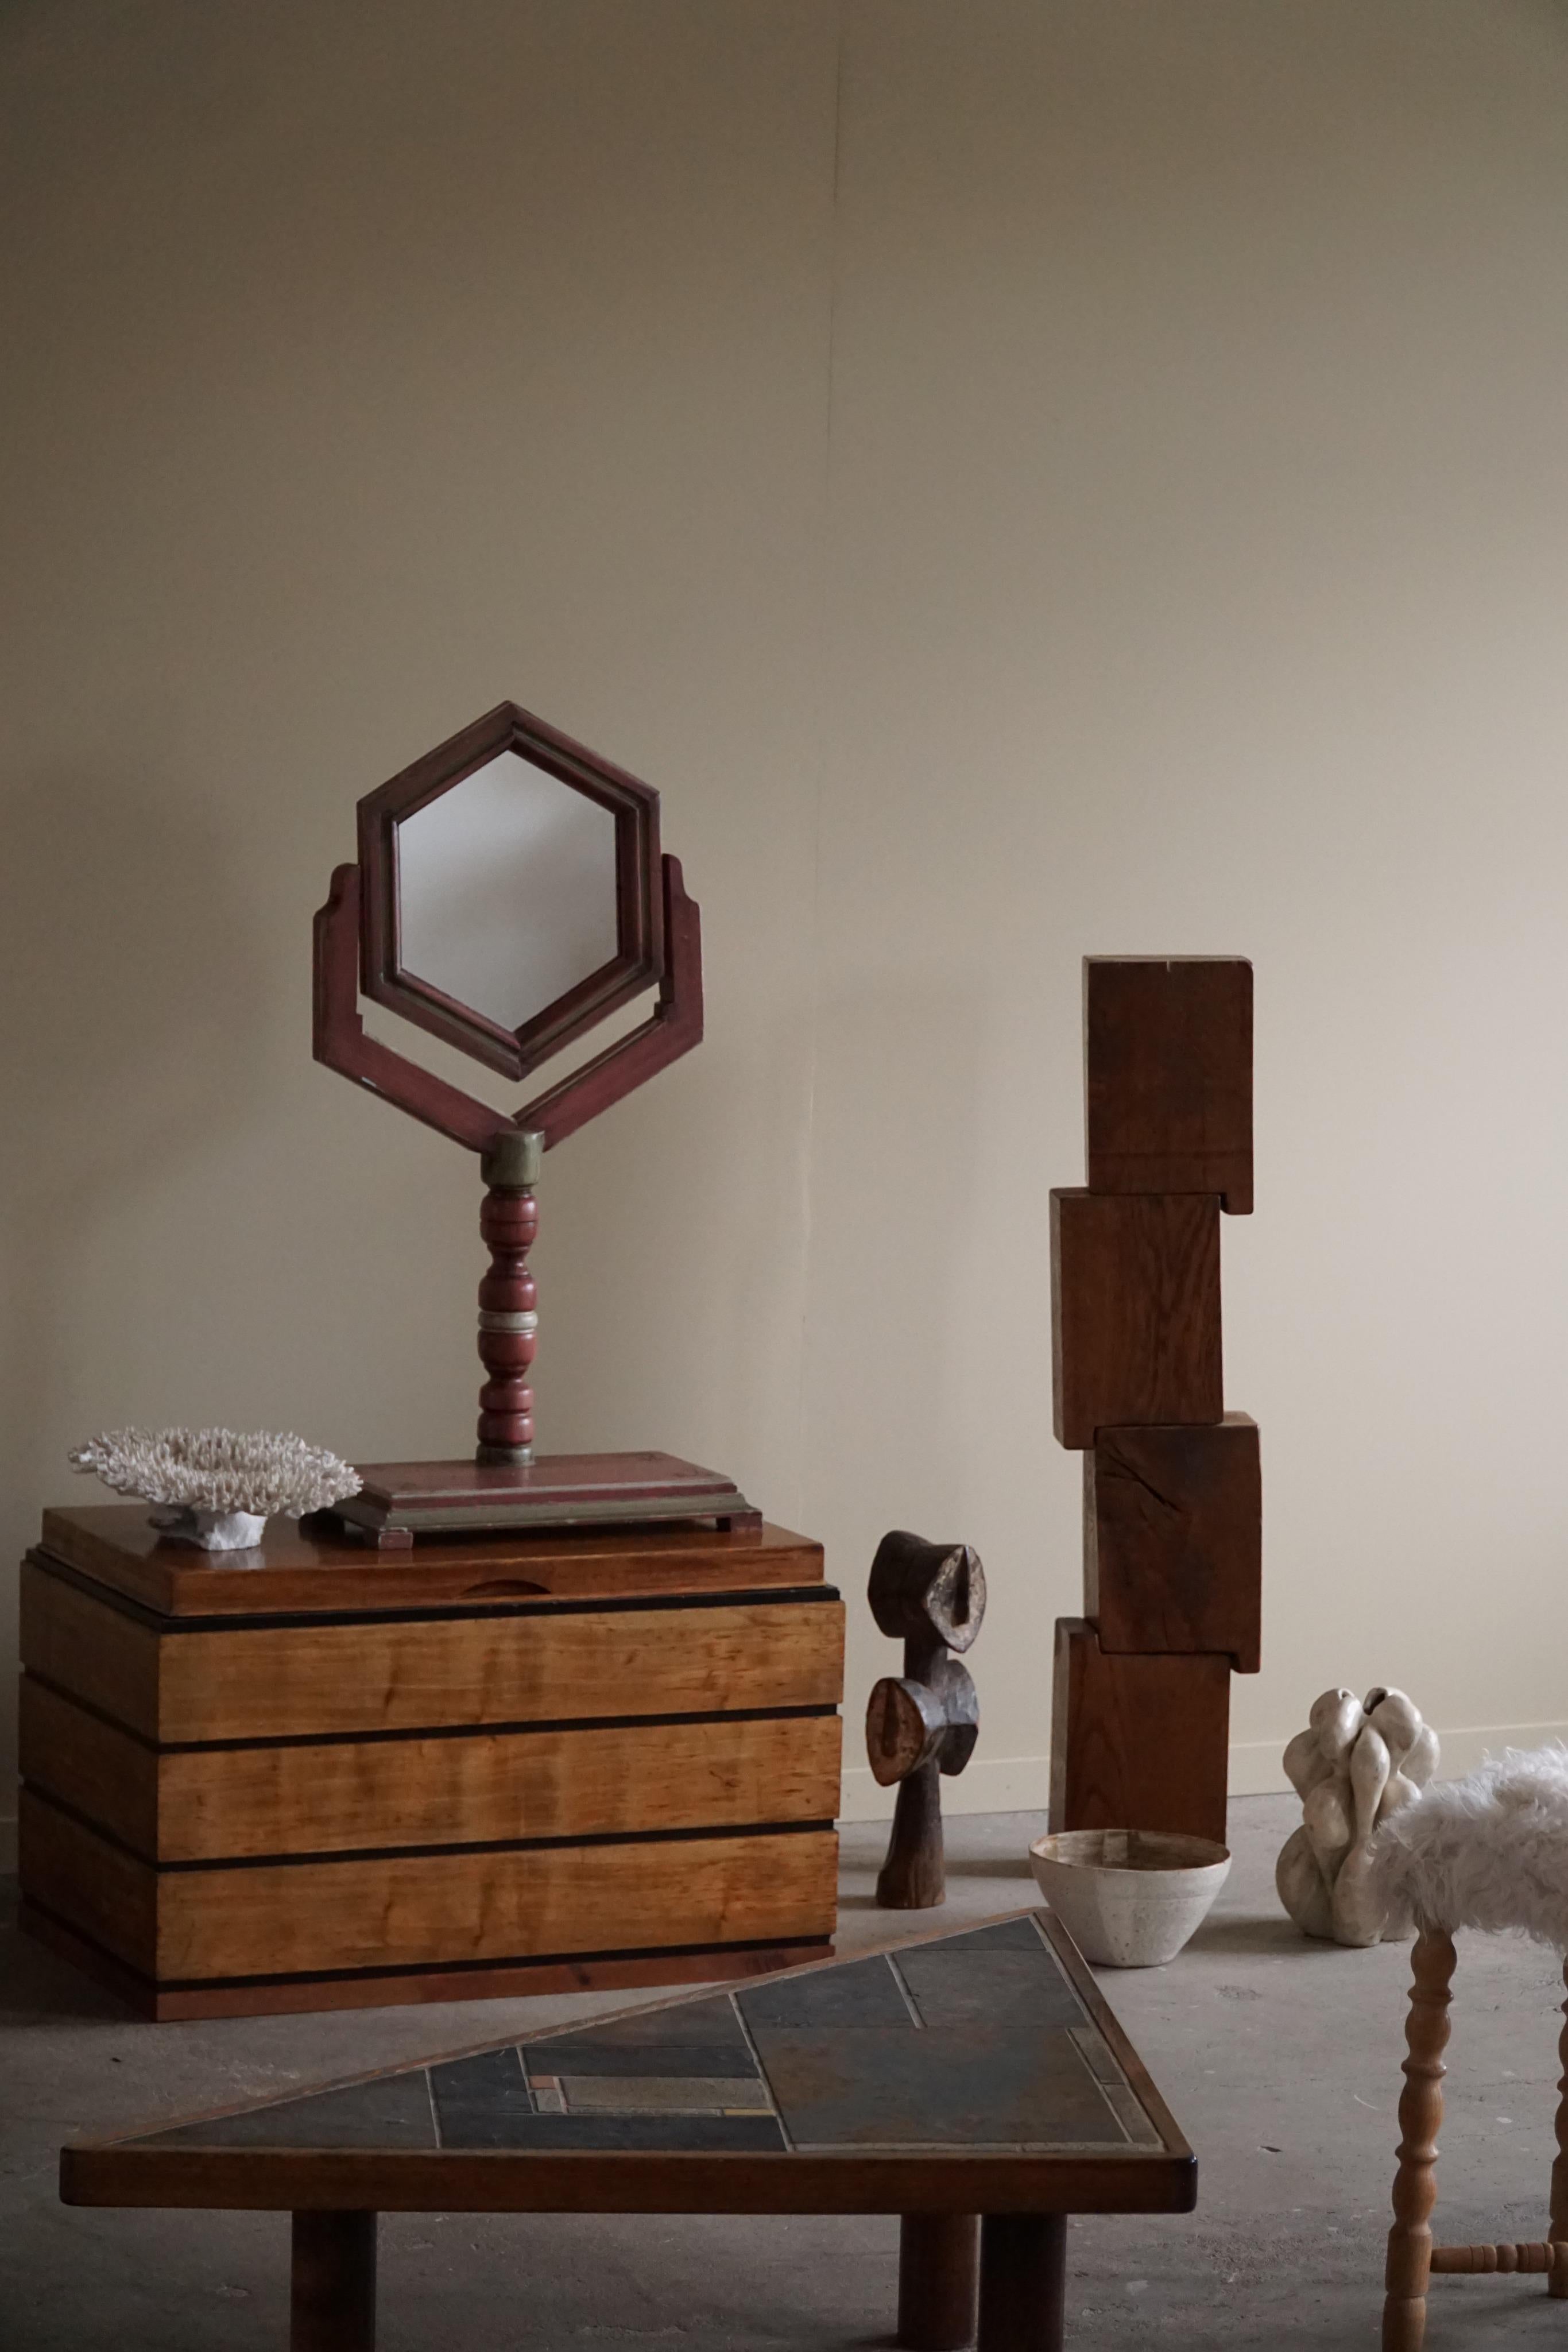 Ce charmant miroir de table en pin de forme hexagonale est un superbe exemple de l'art populaire suédois du début des années 1900. Le miroir est fabriqué en bois de pin massif avec une belle peinture patinée. Il capture l'essence de l'artisanat